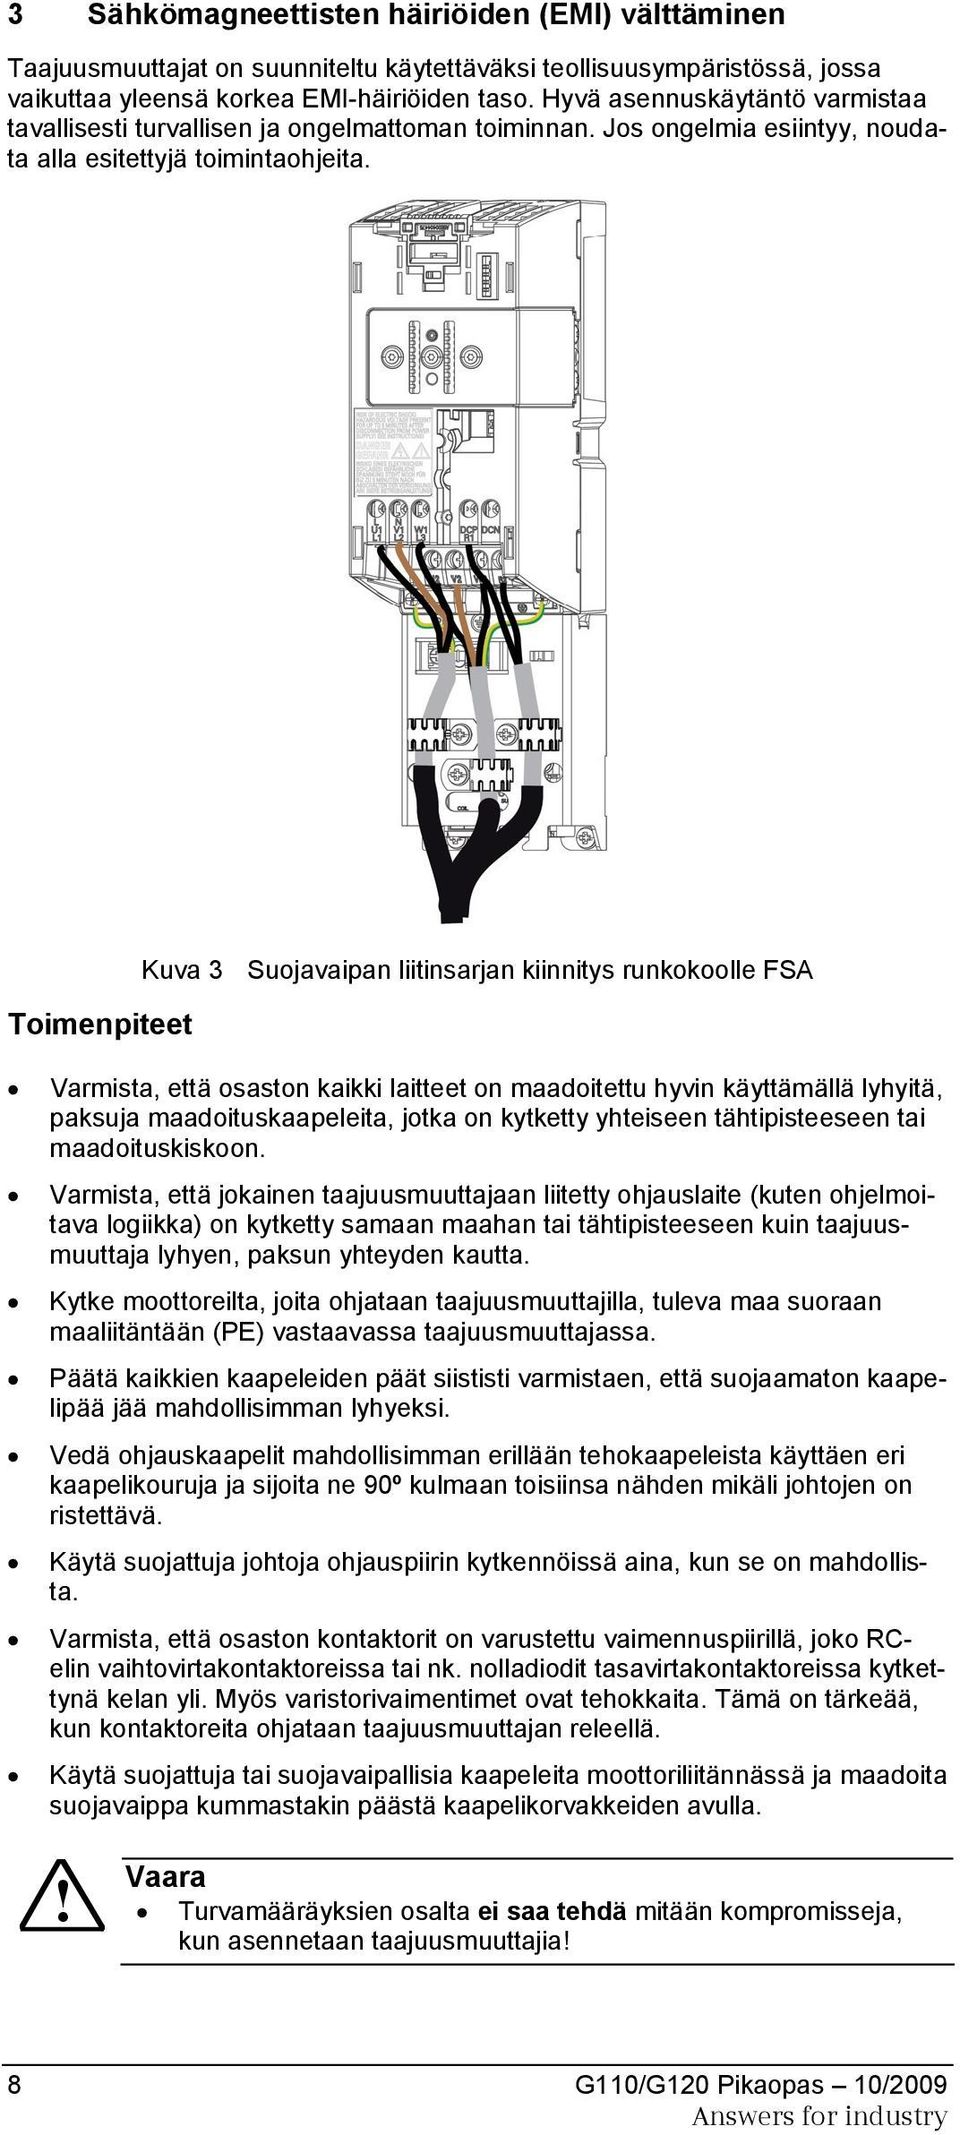 Kuva 3 Suojavaipan liitinsarjan kiinnitys runkokoolle FSA Toimenpiteet Varmista, että osaston kaikki laitteet on maadoitettu hyvin käyttämällä lyhyitä, paksuja maadoituskaapeleita, jotka on kytketty